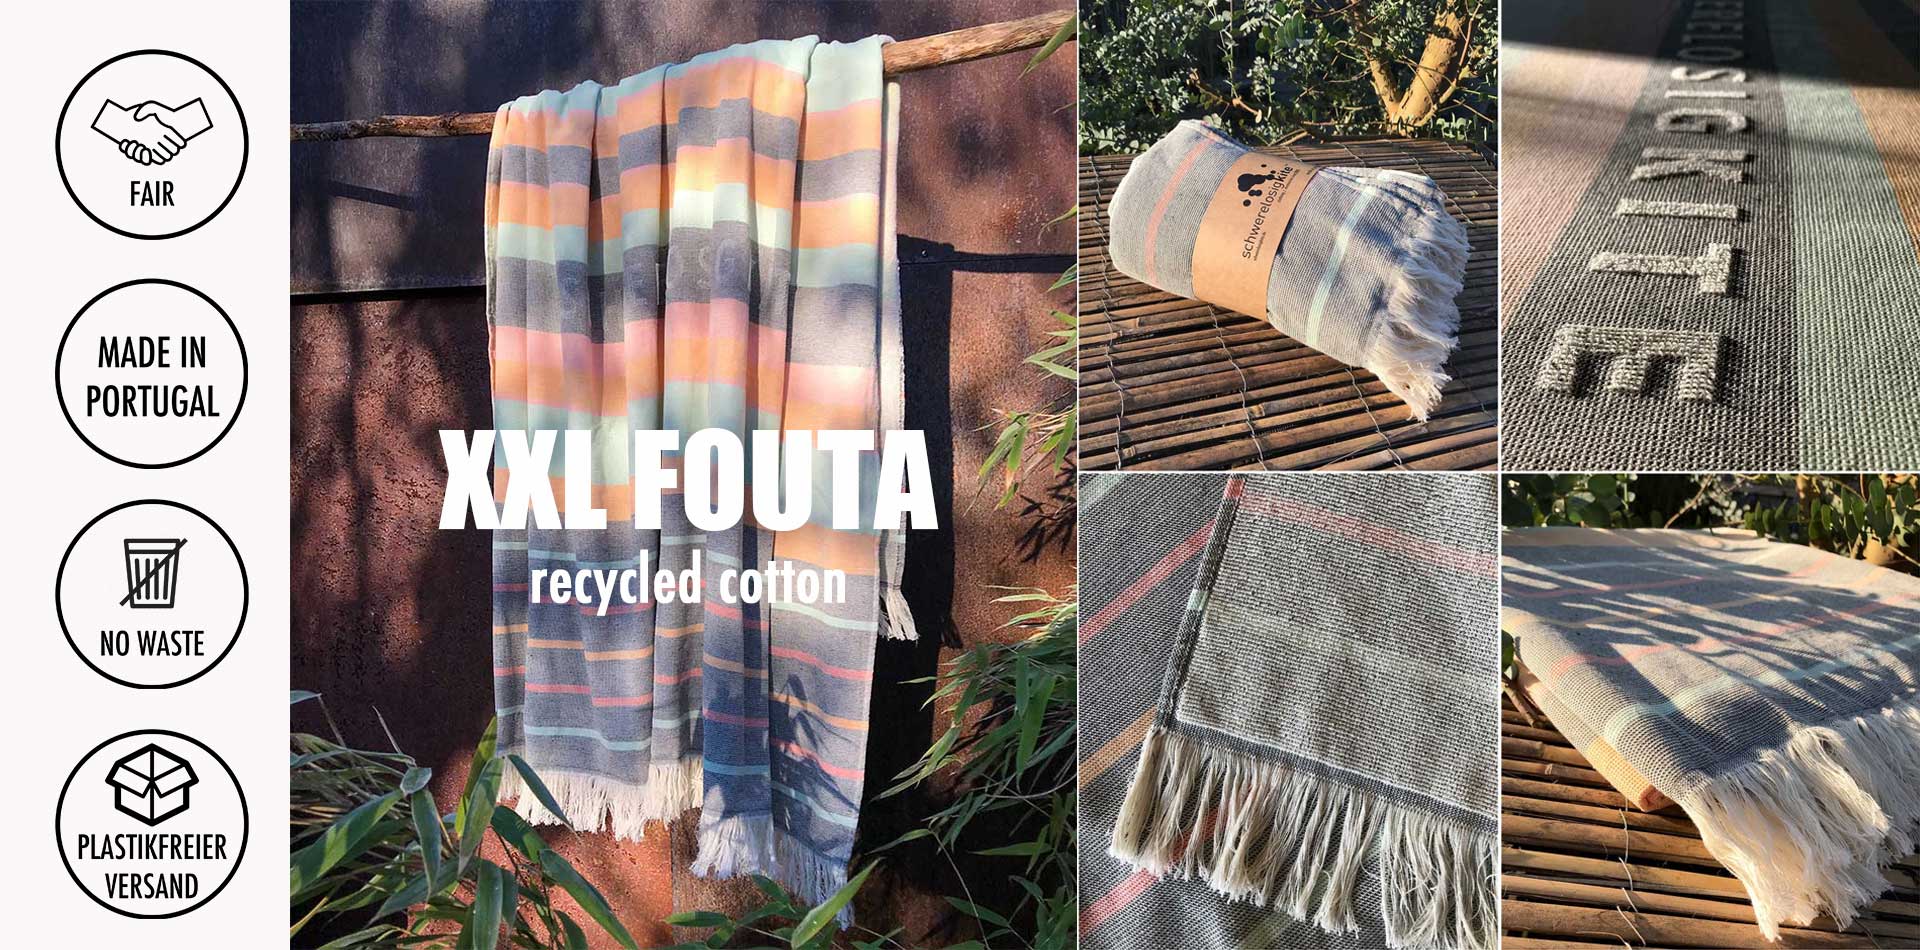 XXL Fouta  recycled cotton